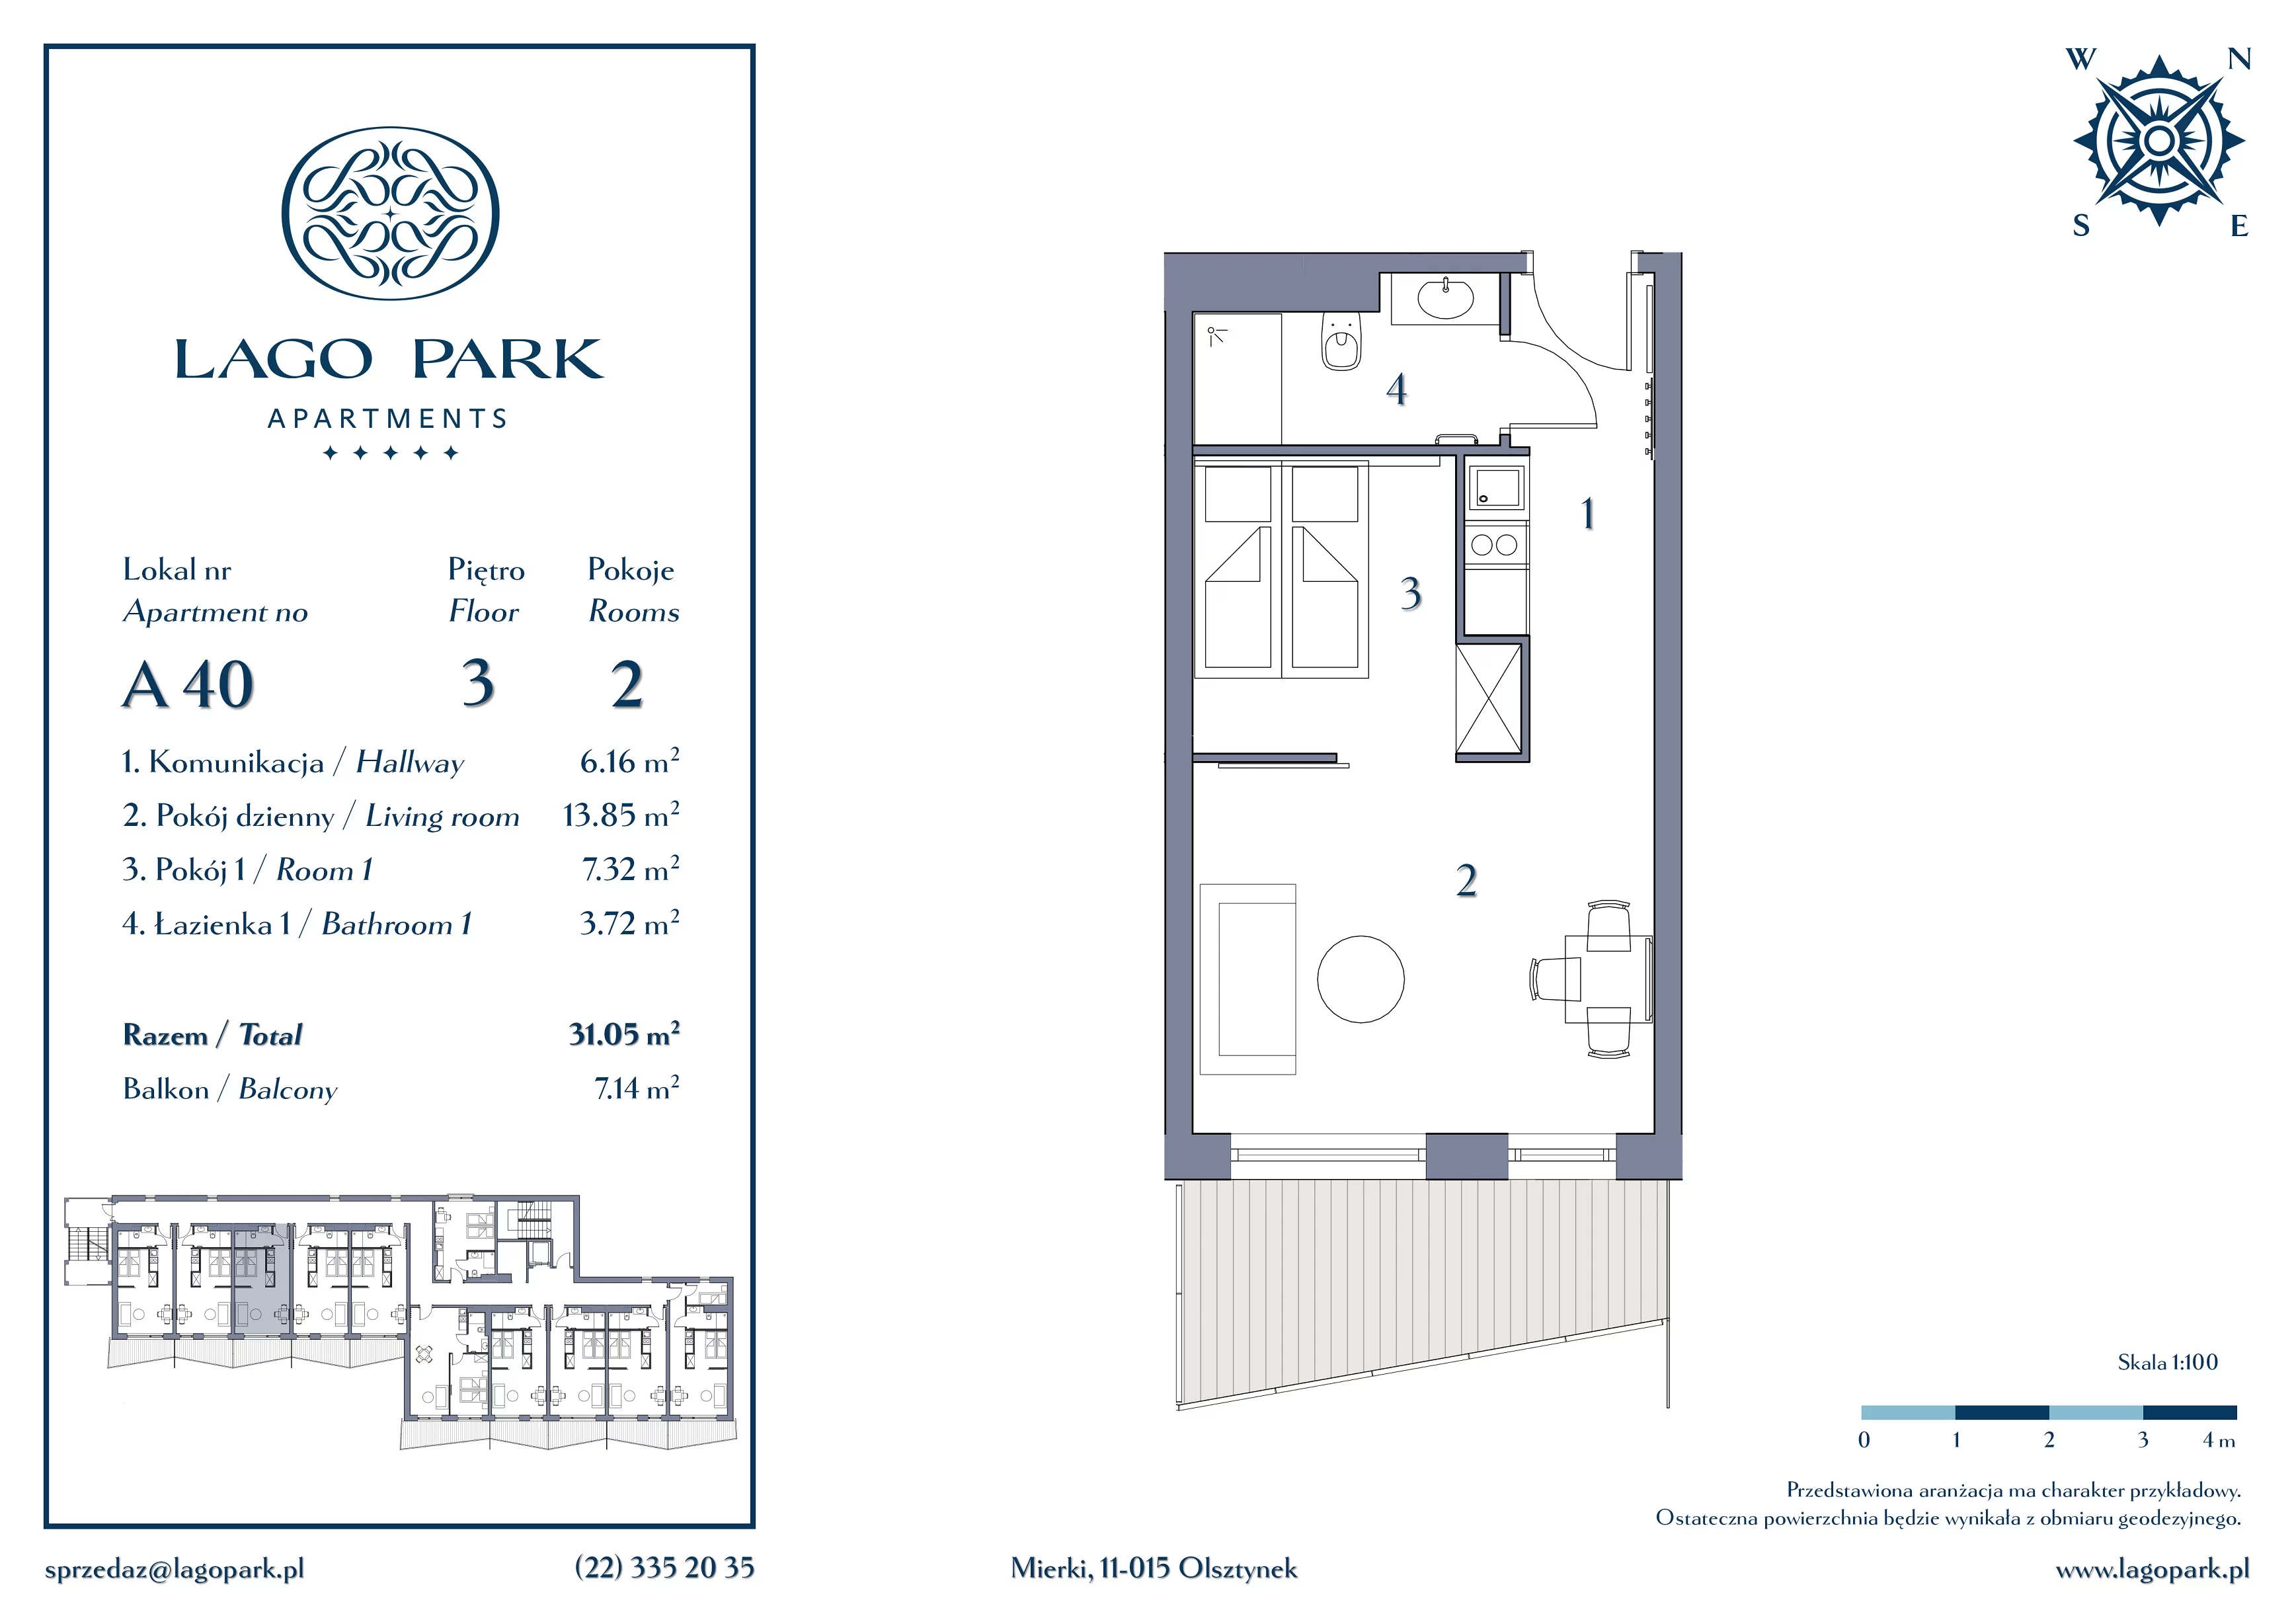 Apartament inwestycyjny 31,05 m², piętro 3, oferta nr A40, Lago Park Apartments by Aries, Mierki, Kołatek 2